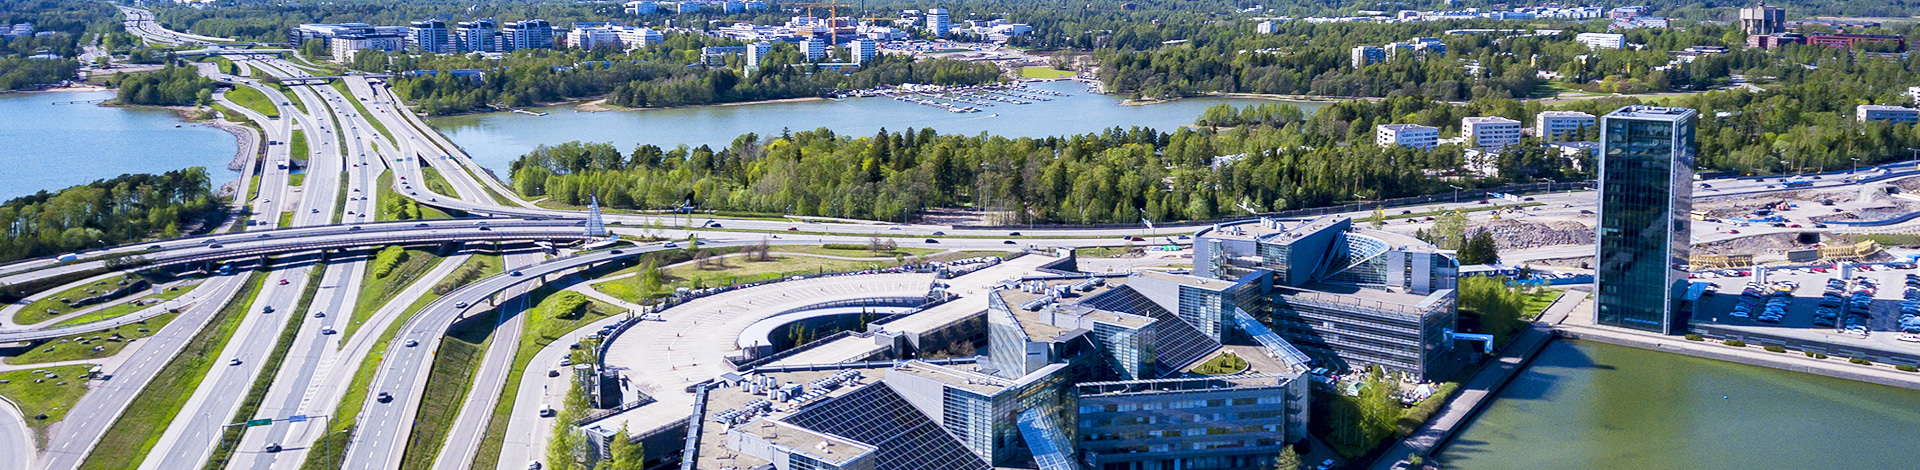 View of Espoo